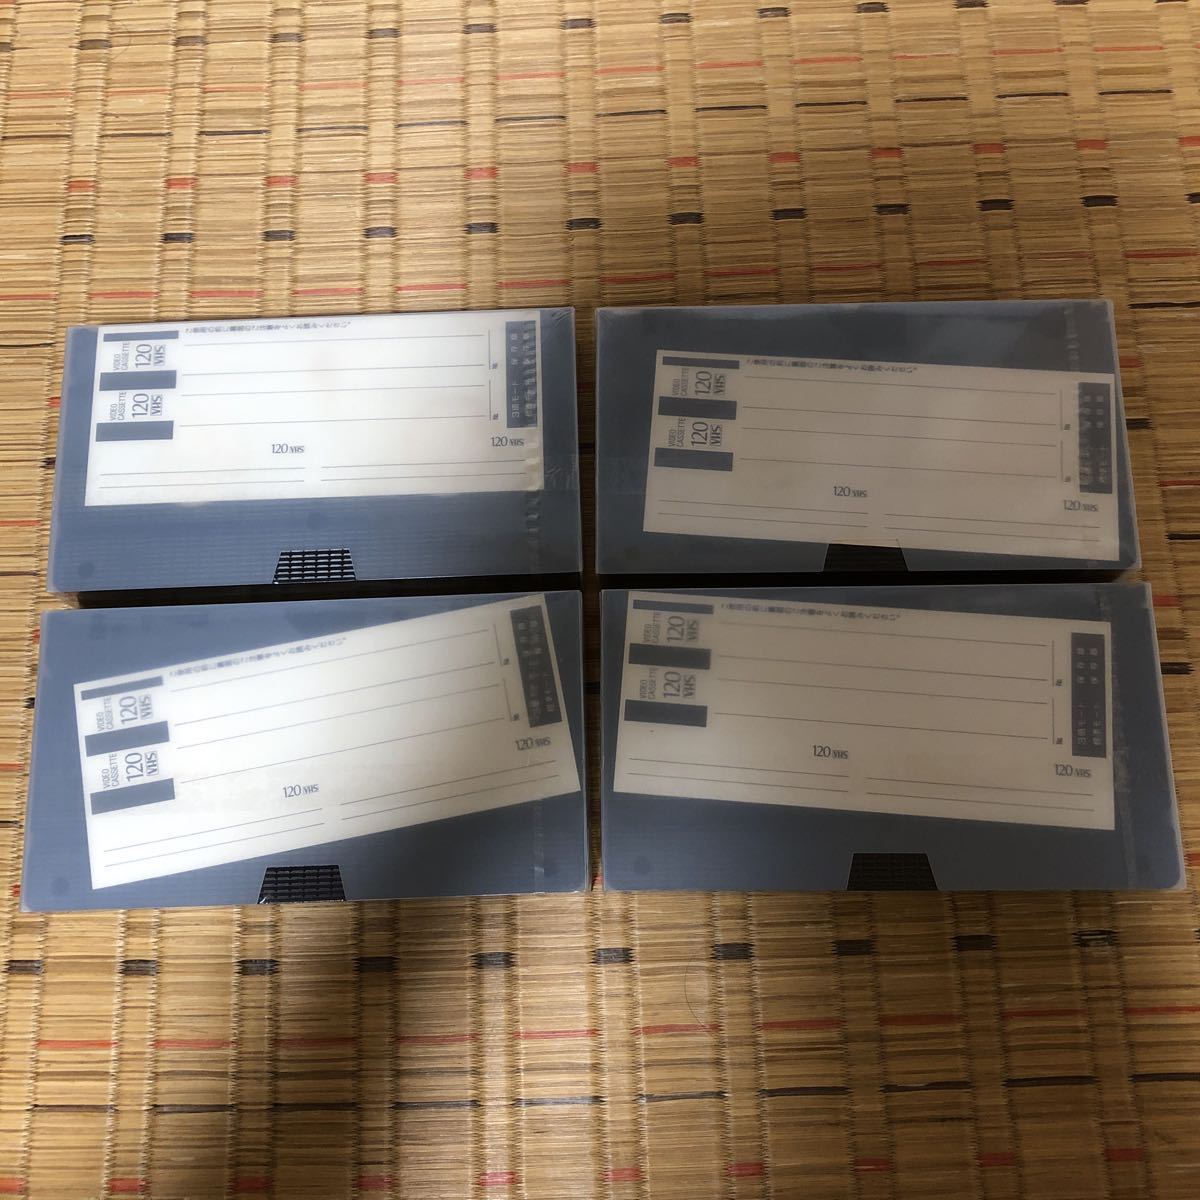 SONYスタンダードVHSビデオカセットテープ 3T-120VH & TDK HS120 VHS スタンダードビデオカセットテープ T-120HSLX3 その他_画像8